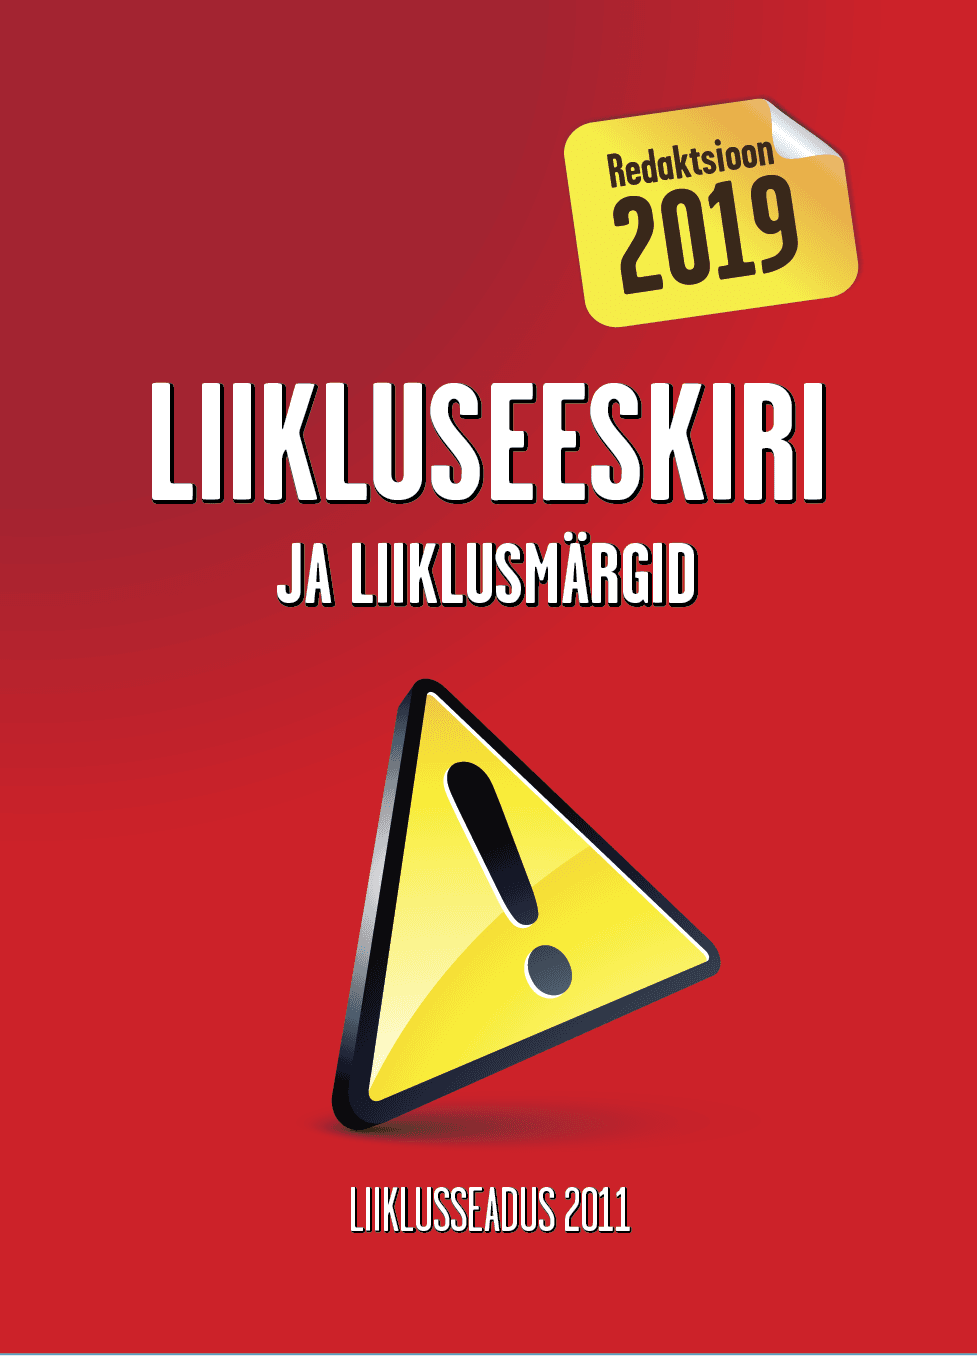 LIIKLUSEESKIRI JA LIIKLUSMÄRGID. REDAKTSIOON 2019